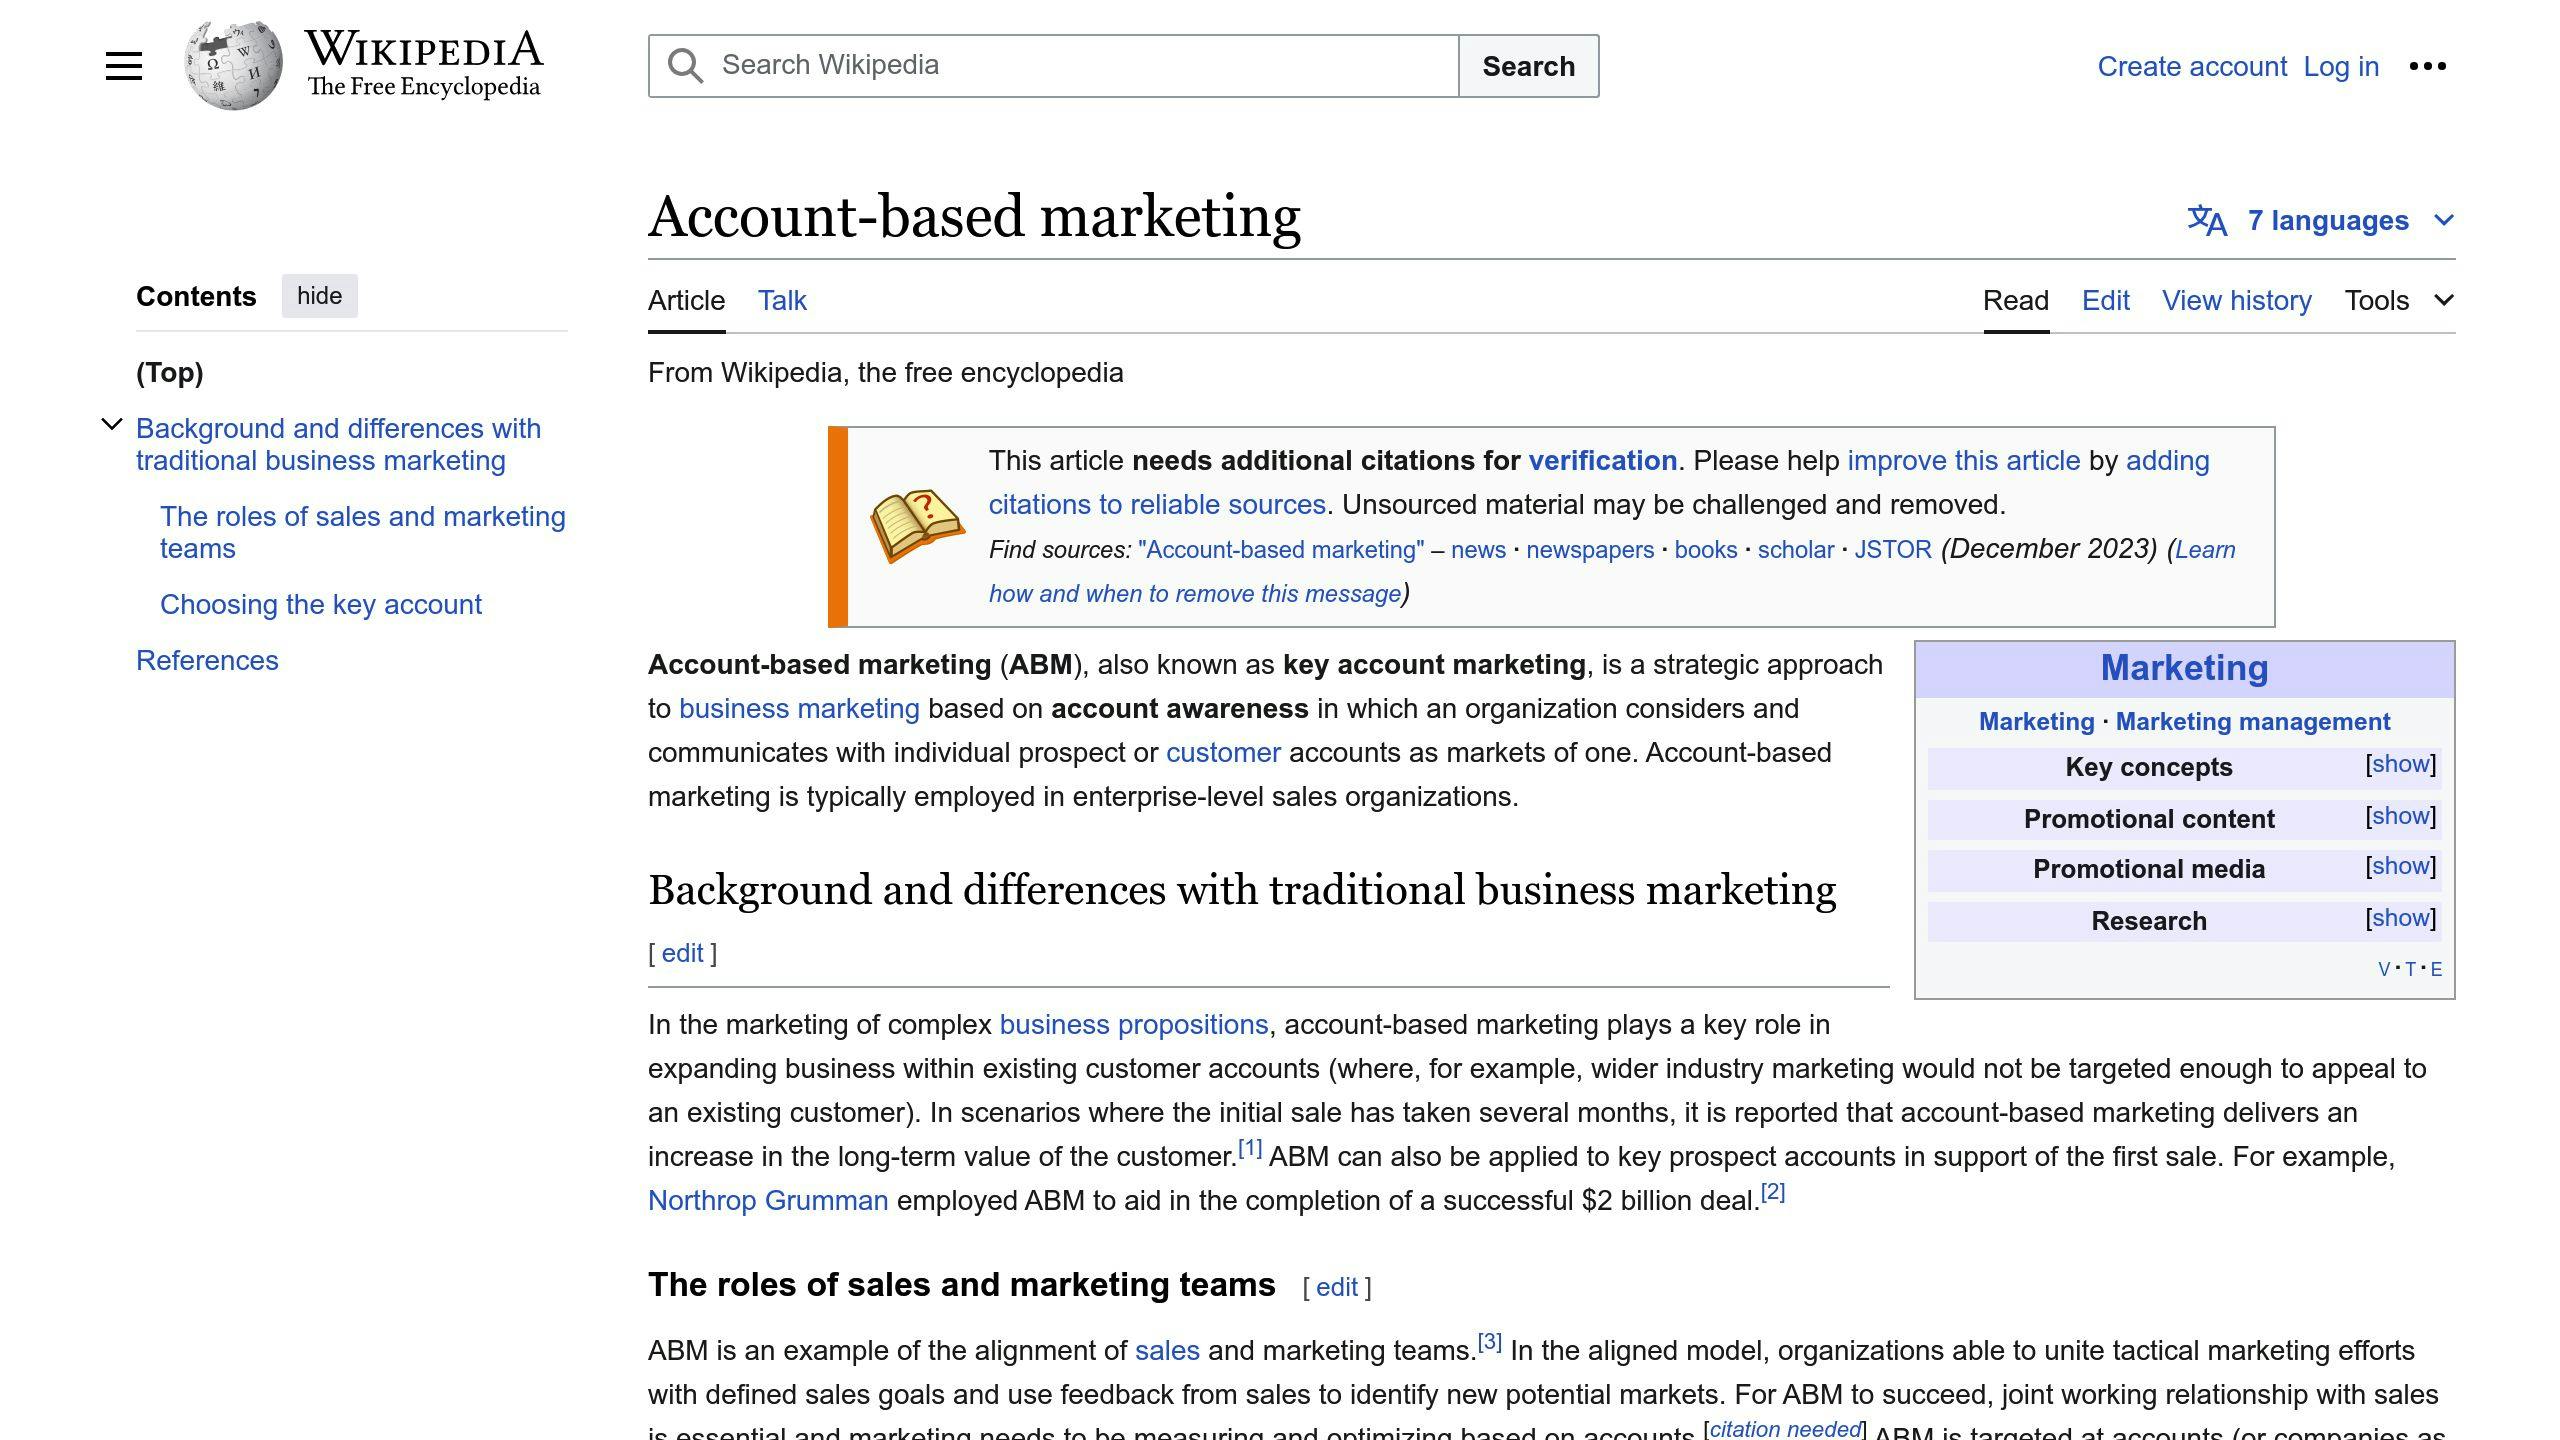 Account-Based Marketing